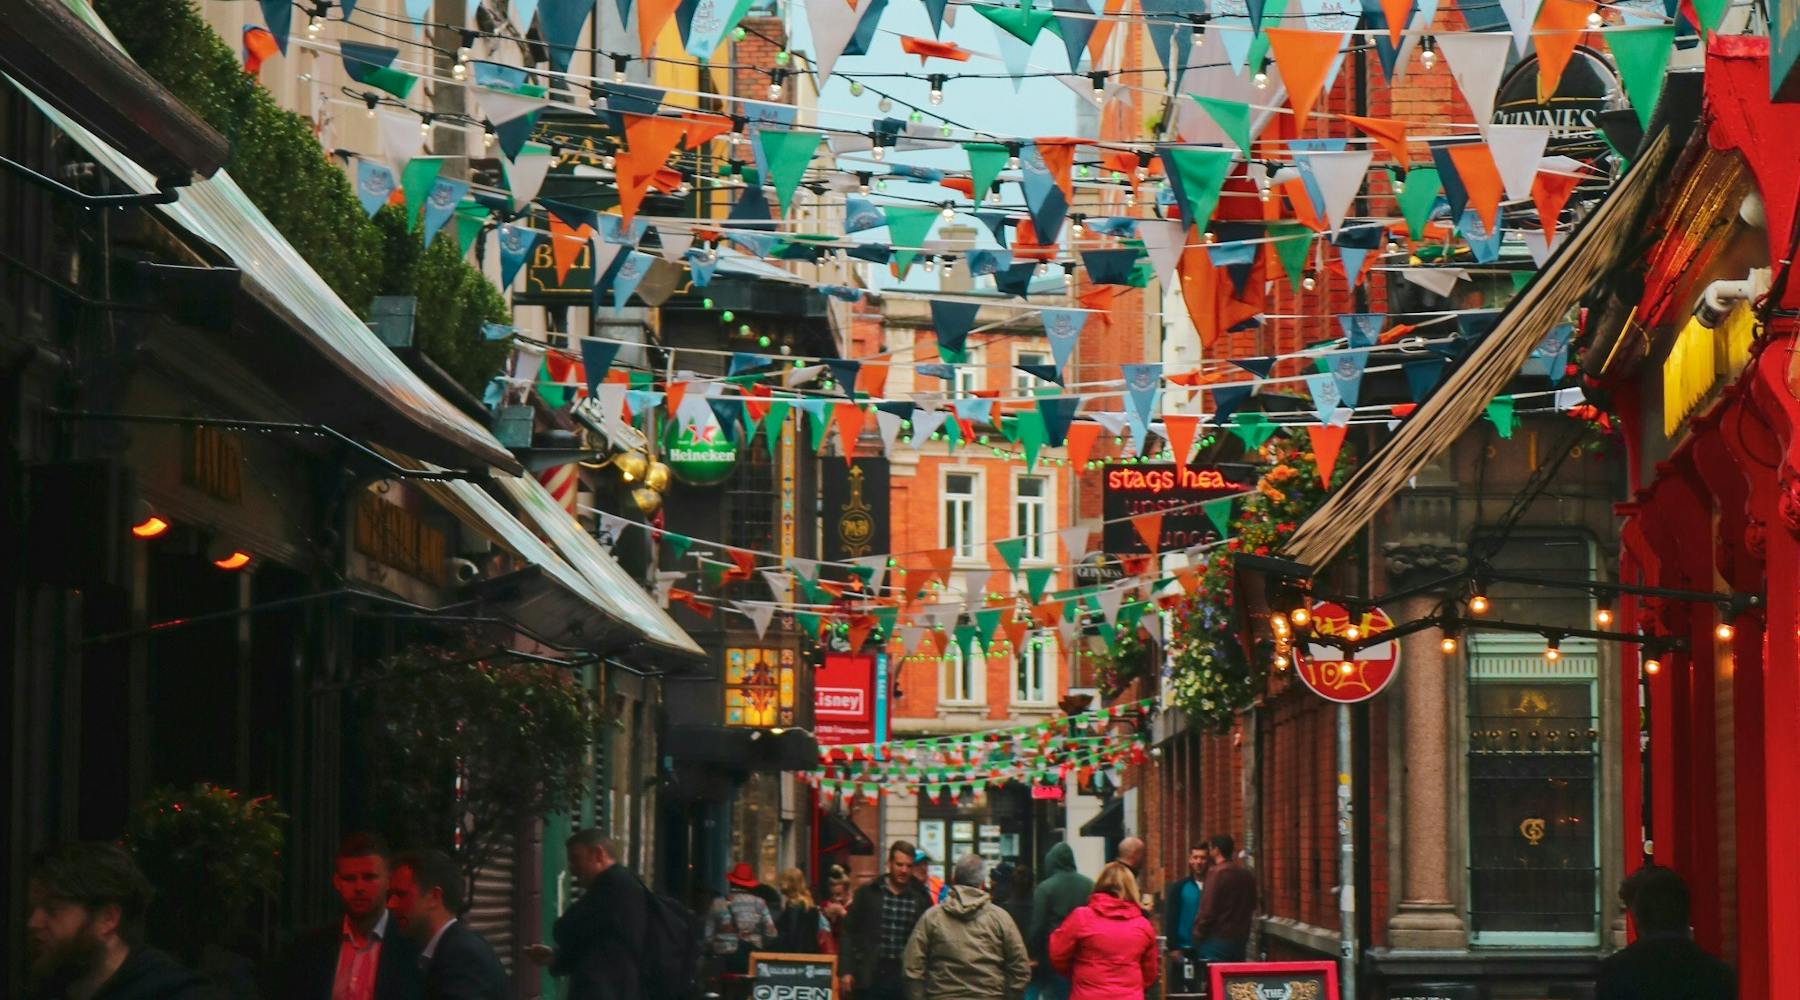 Temple Bar, Dublin, Ireland